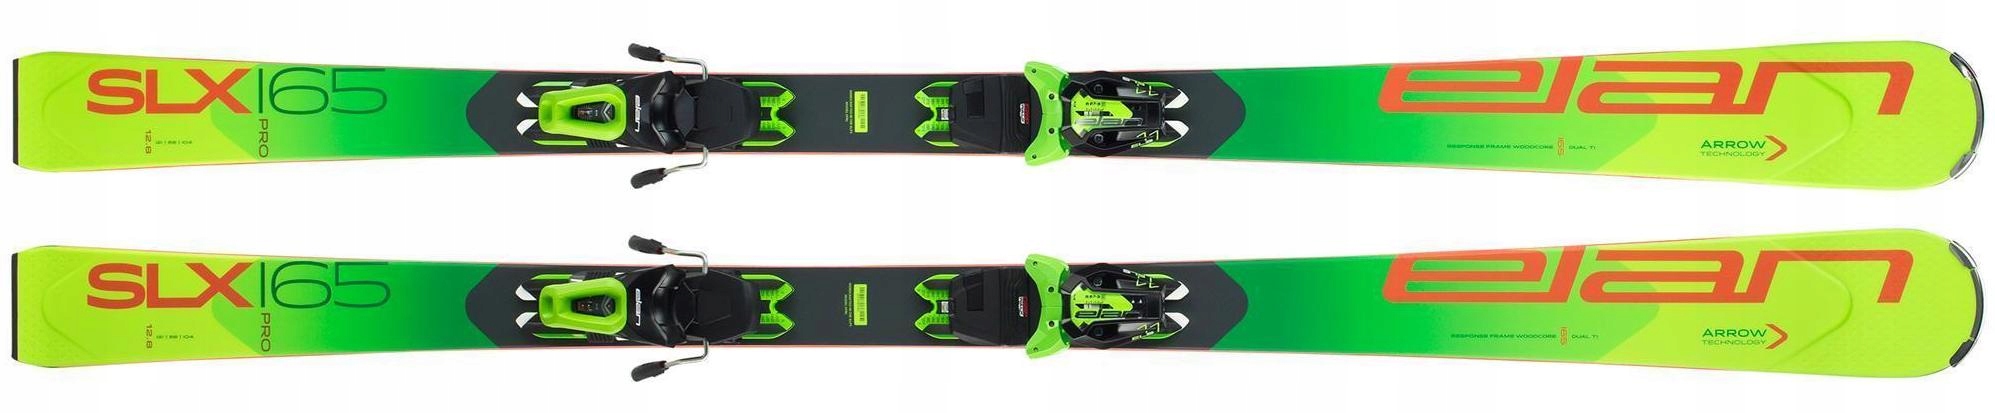 Горные лыжи Elan Rental с креплениями SLX PRO PS + ELS 11 GW Shift (2020-21) (Зеленый, 165)